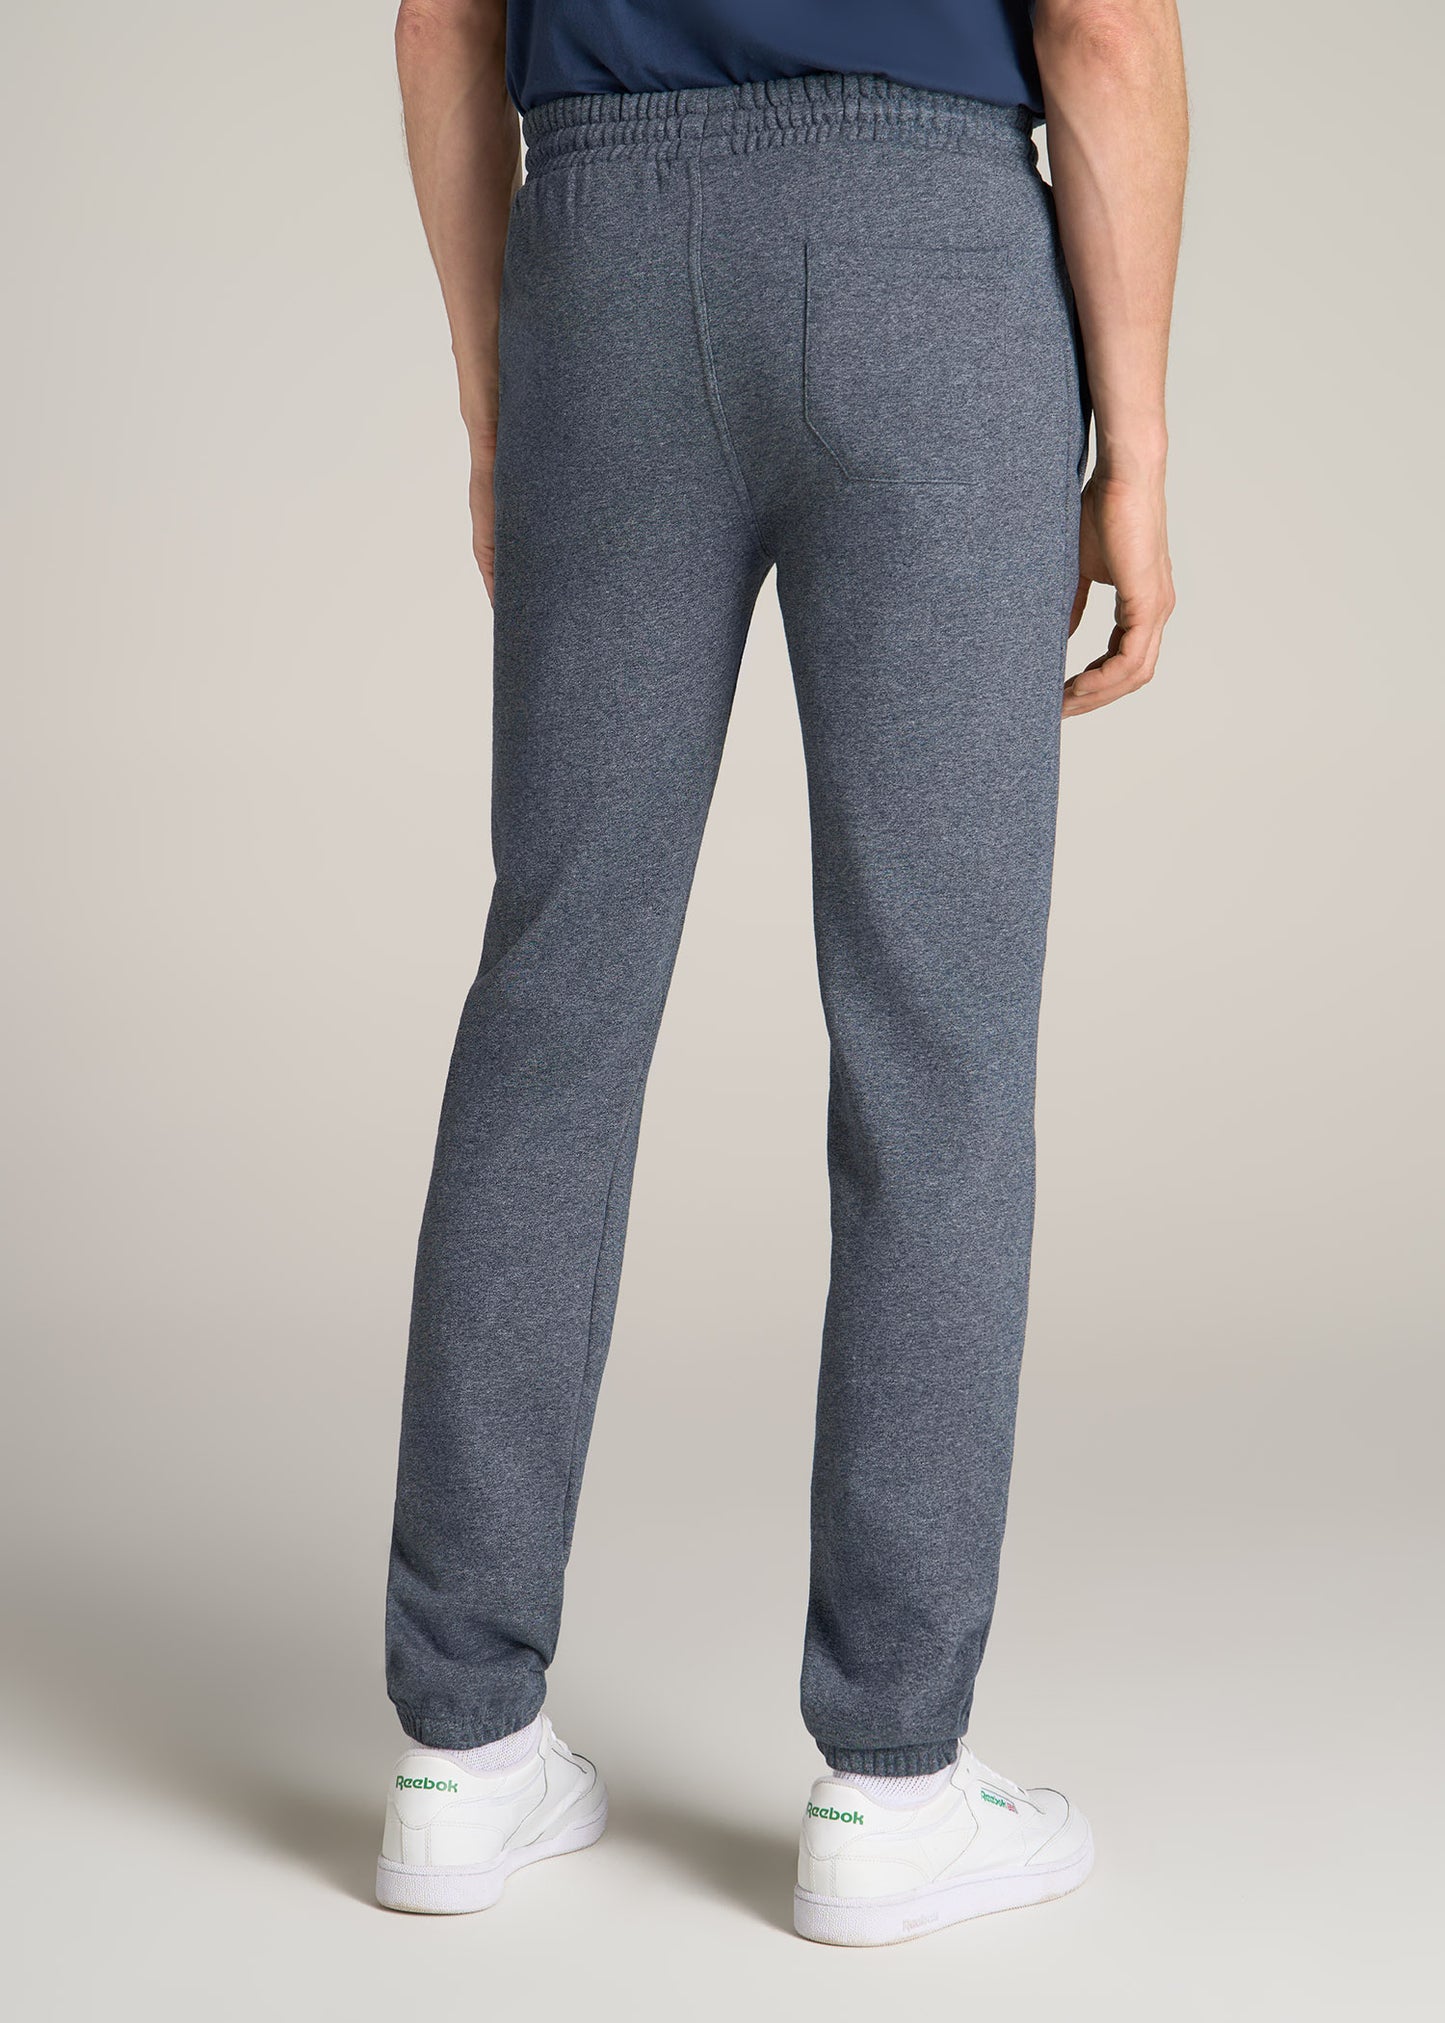 Hanes Men's Fleece Pajama Pants